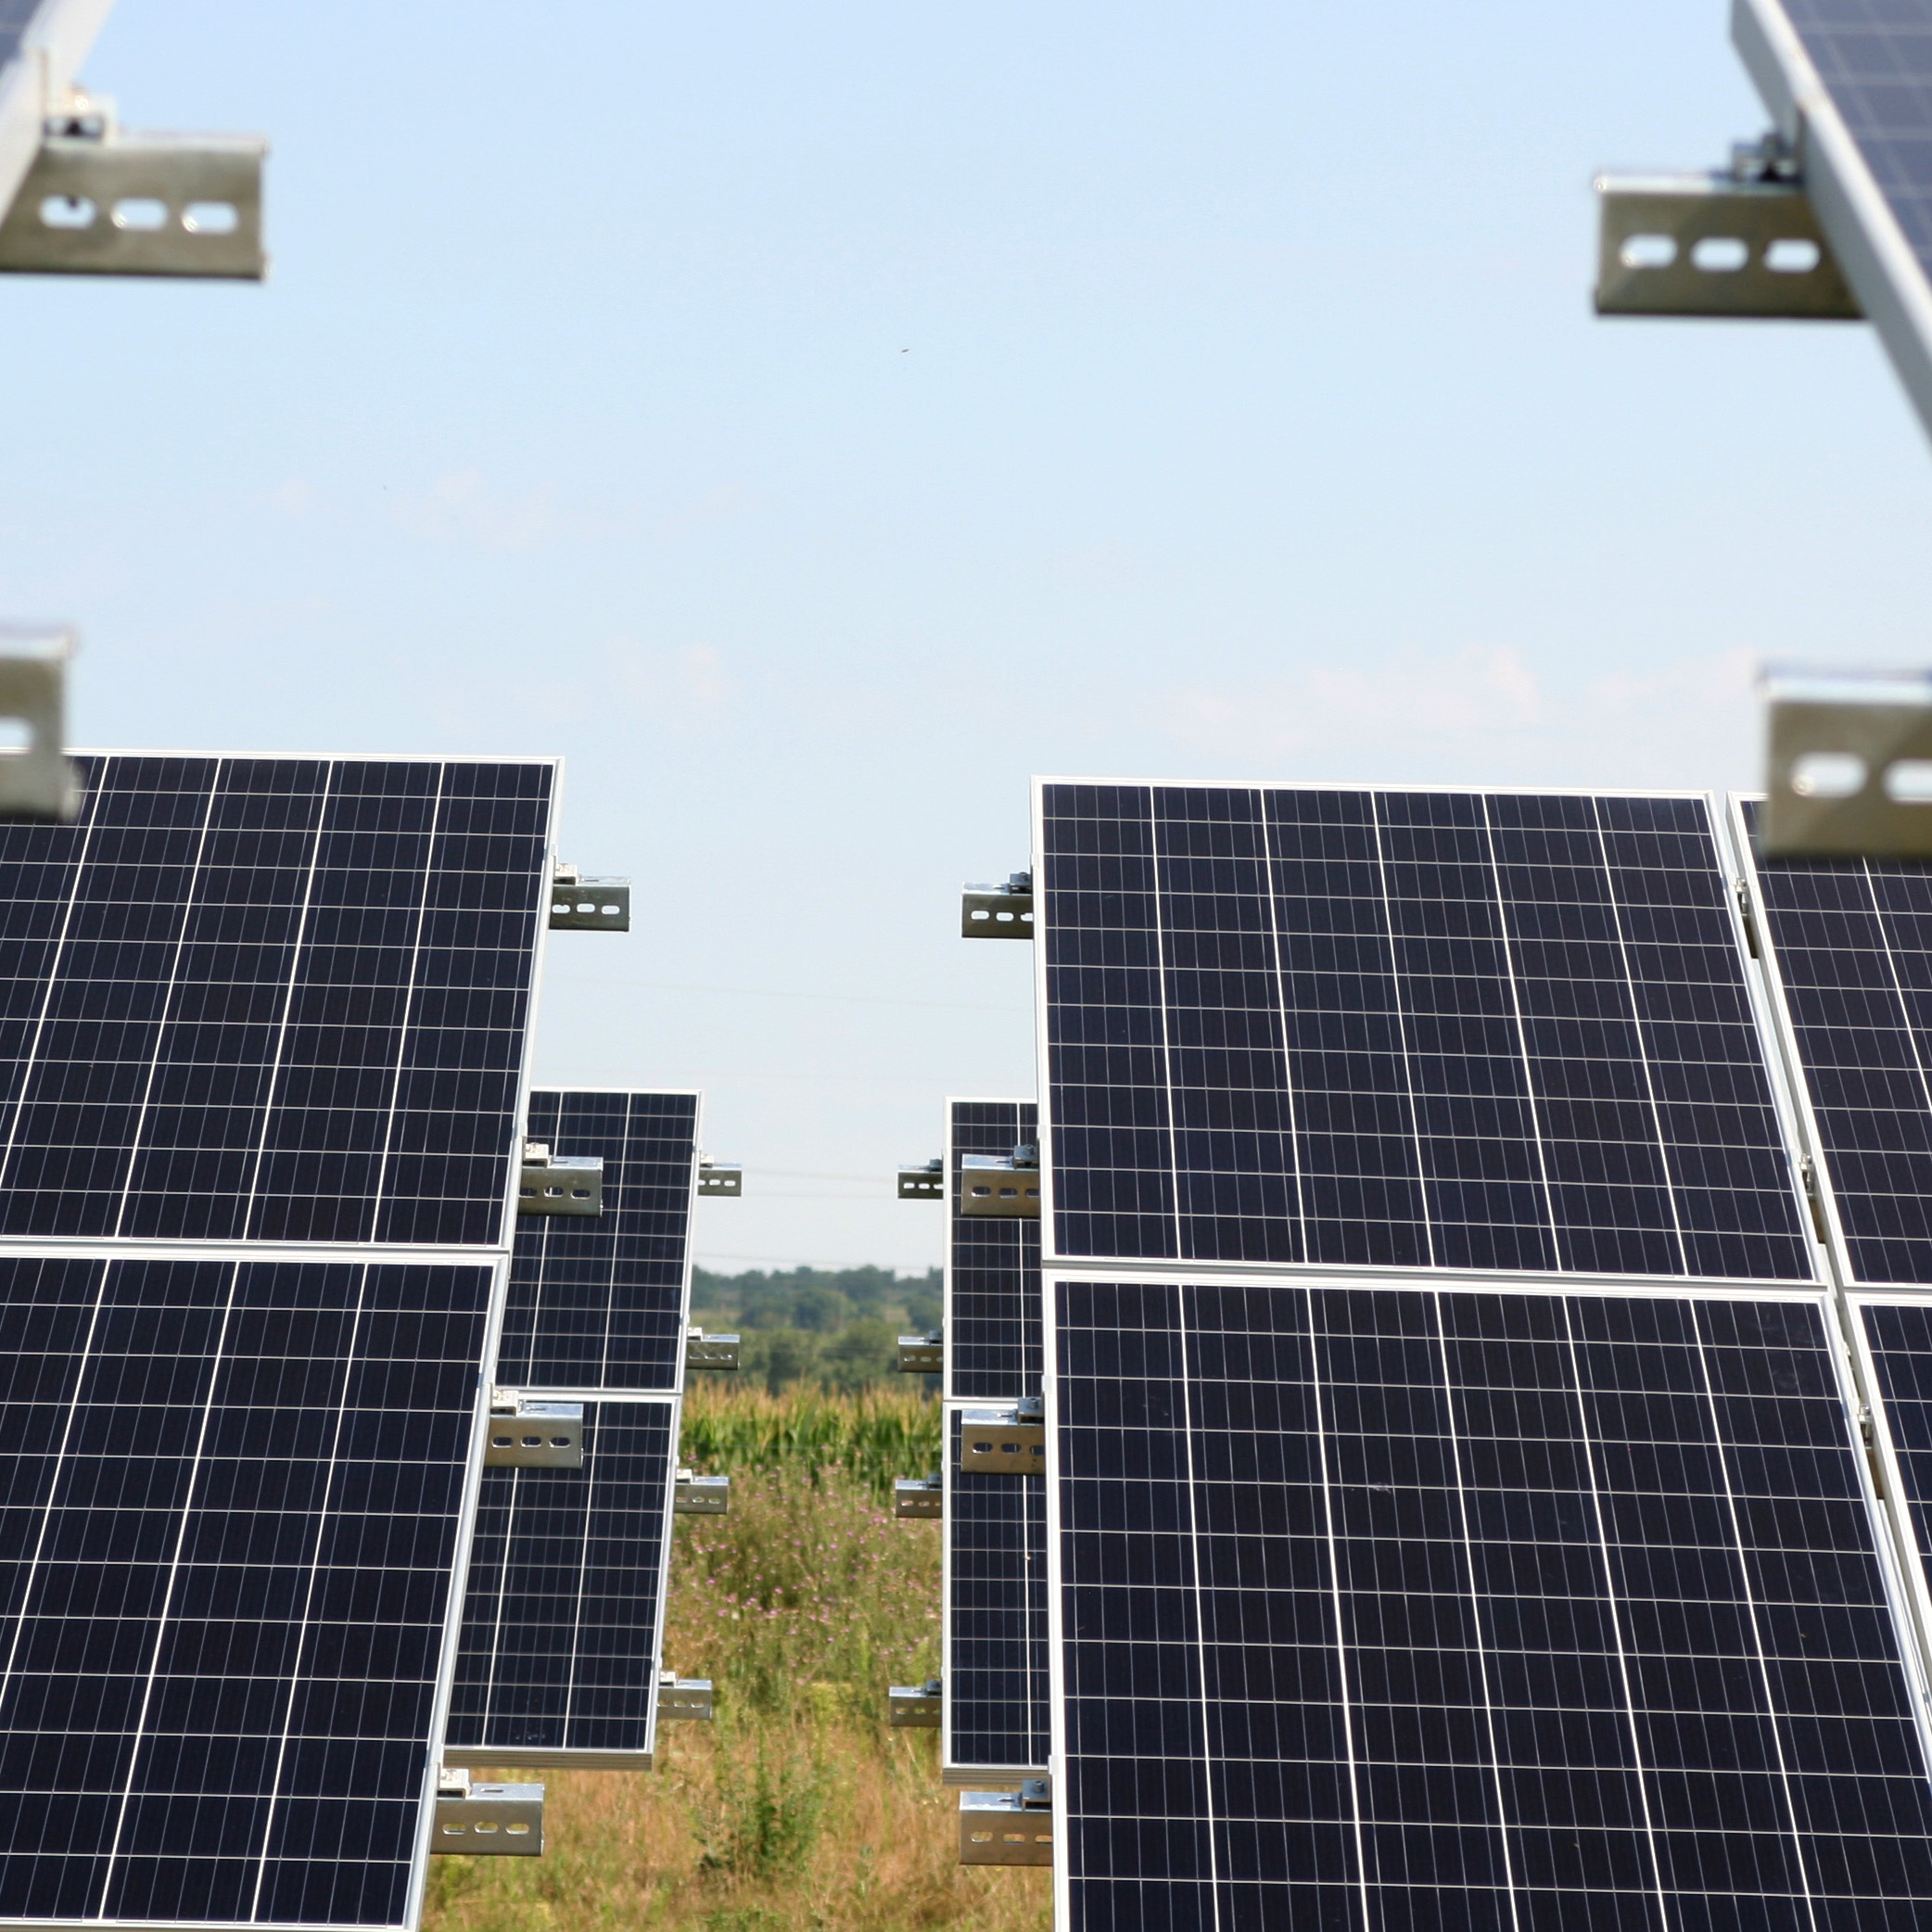 Bicske, 29*499 kWp Astrasun napelempark-flotta - kivitelezés folyamatban